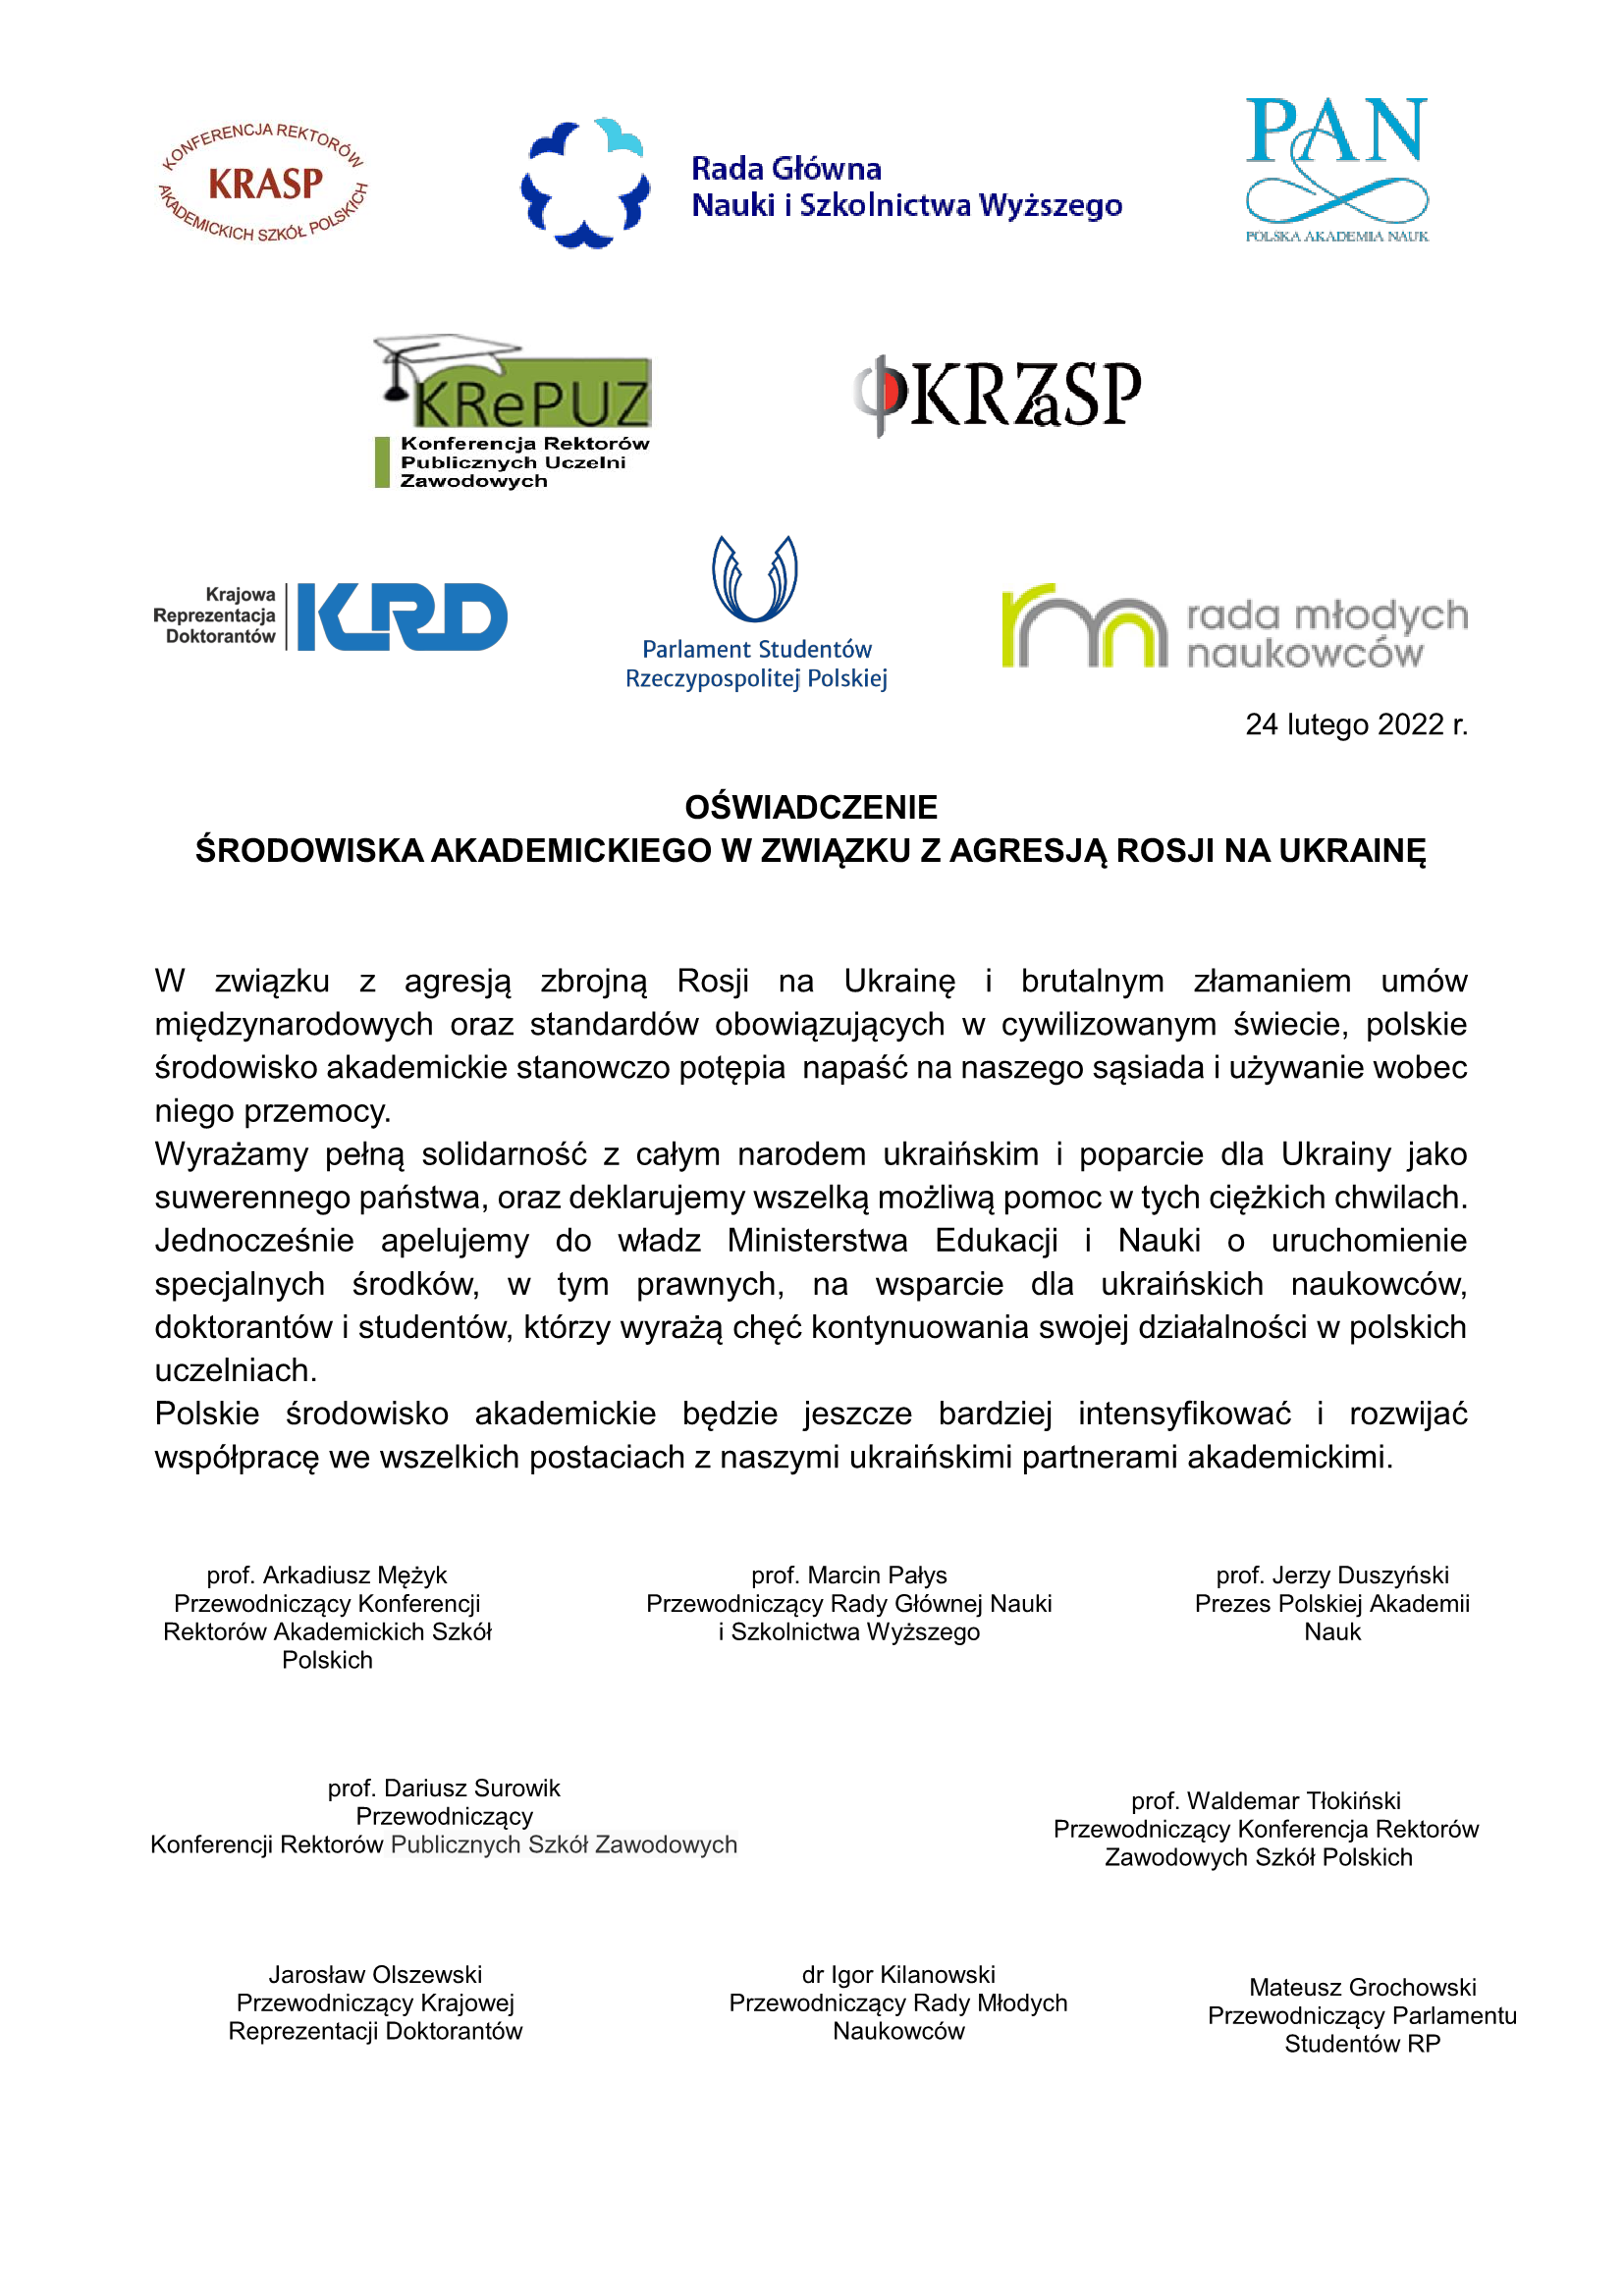 Owiadczenie srodowiska akademickiego Ukraina